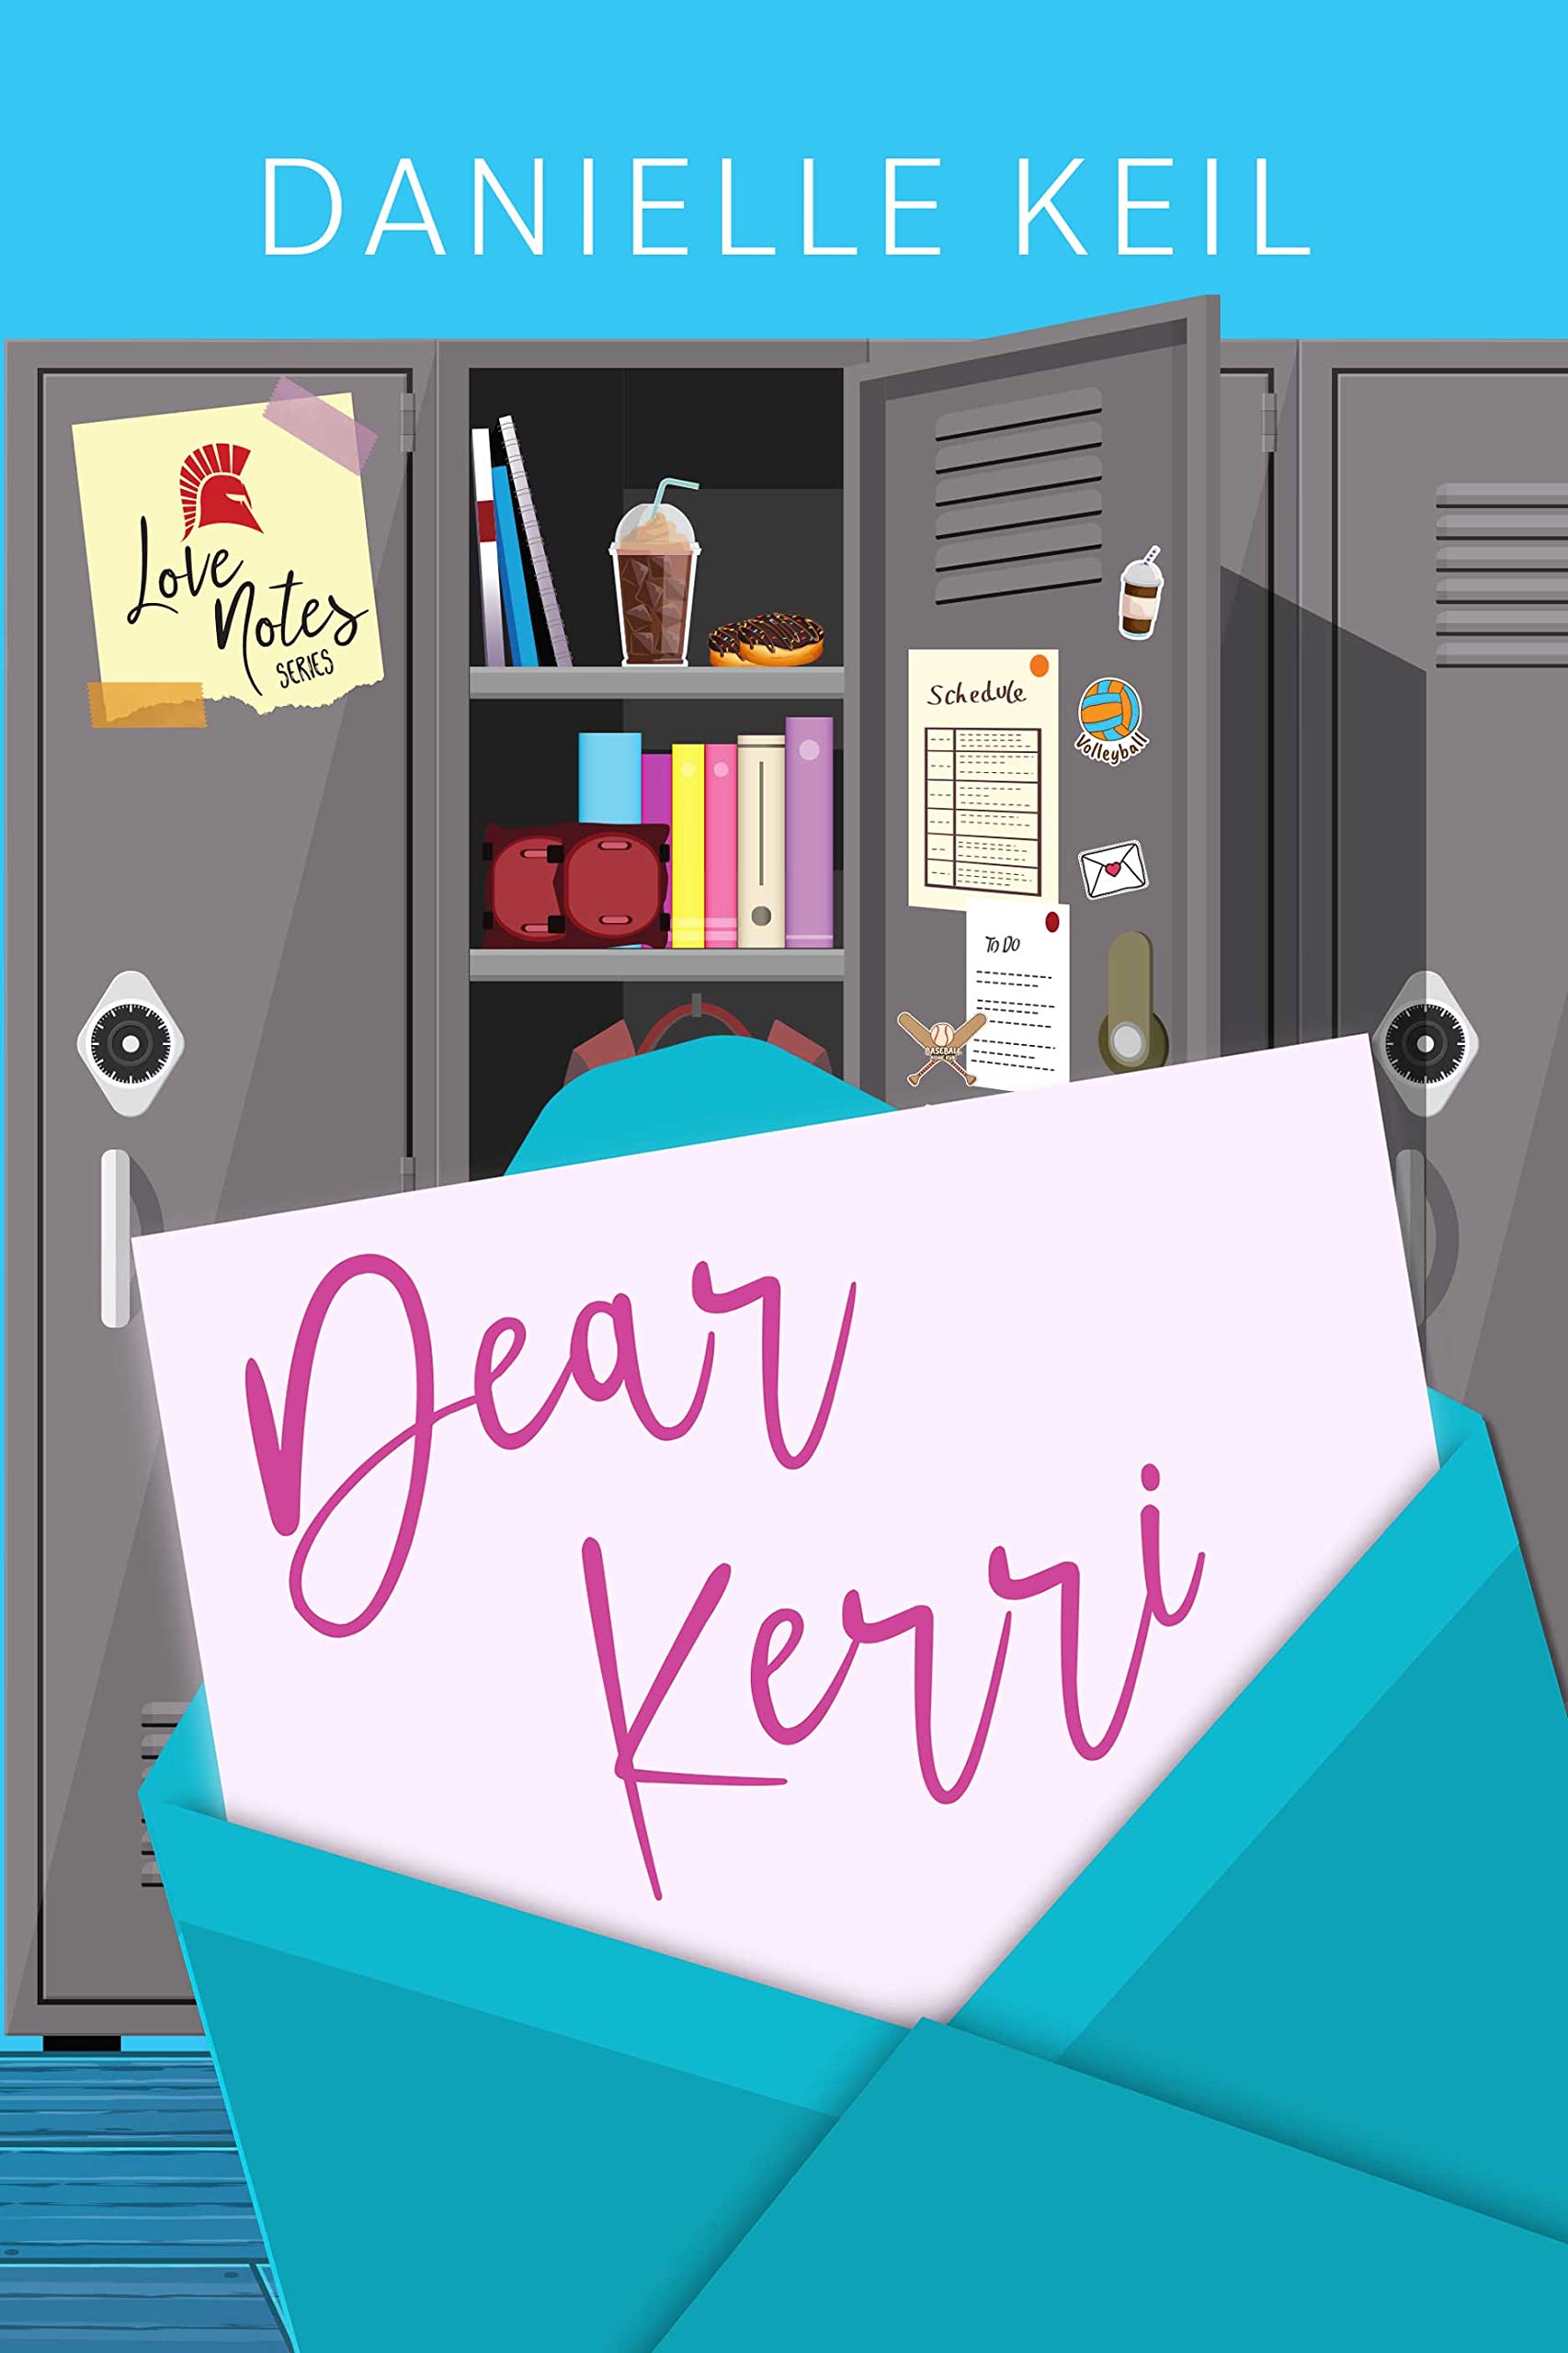 Dear Kerri